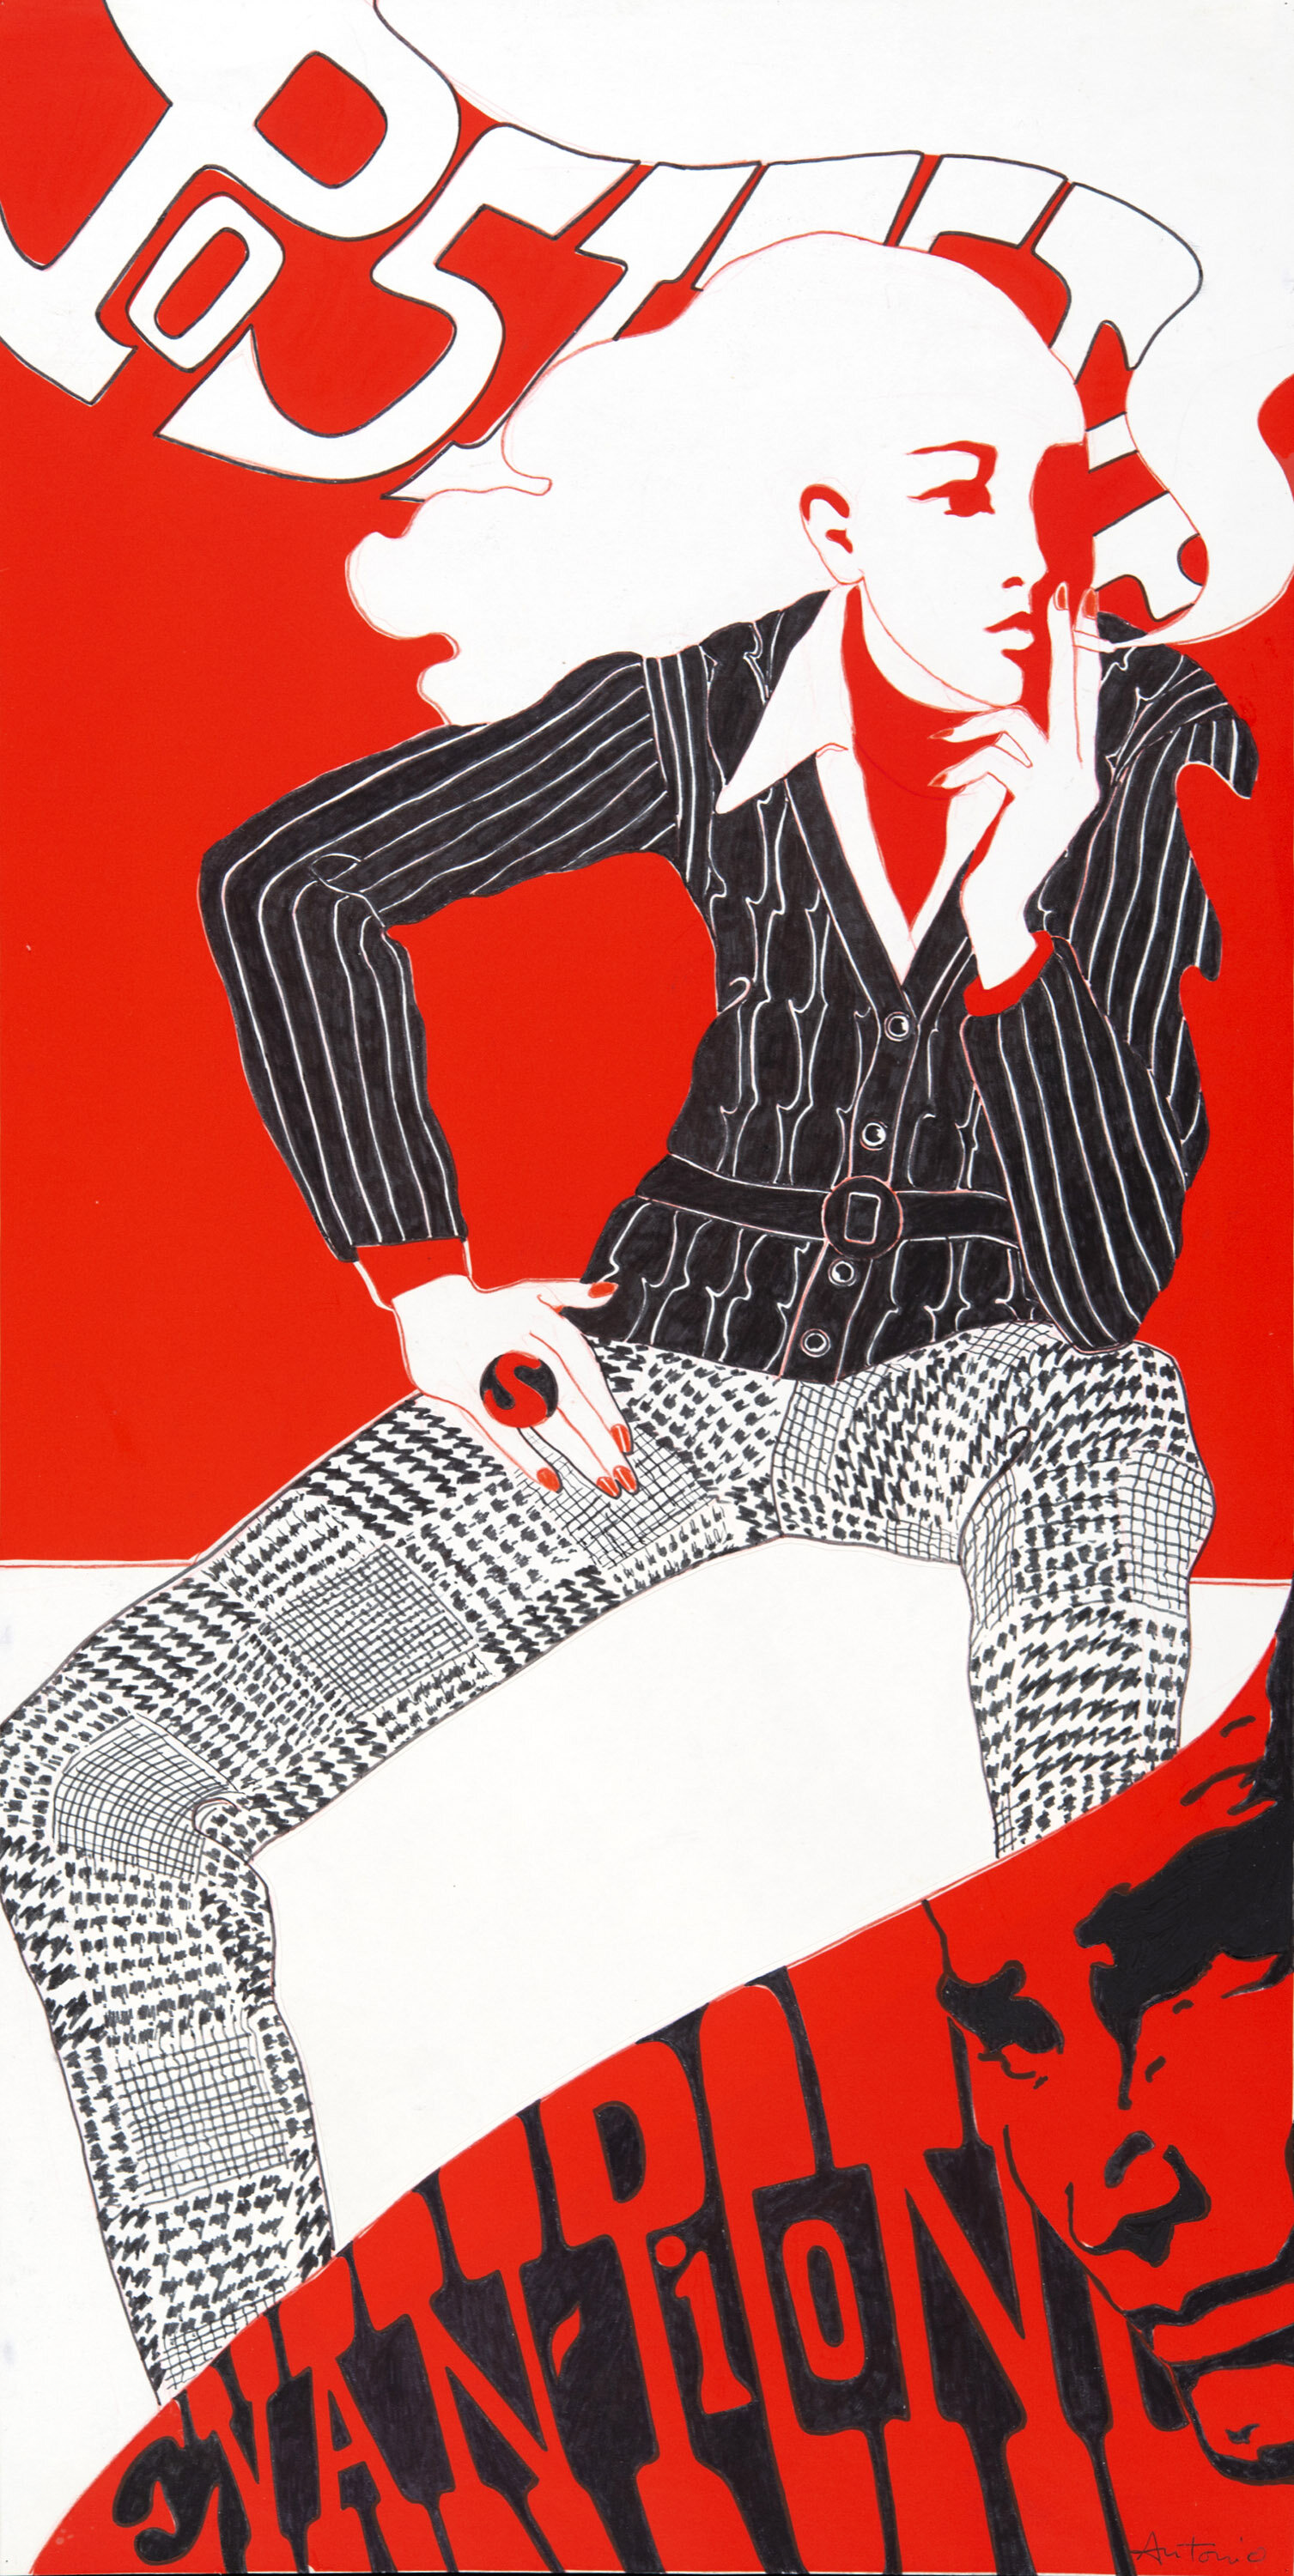 "Long Pull", Fashions of the Times, modelo desconocido, 1967 | imagen cortesía de la página The Estate and Archive of Antonio Lopez and Juan Ramos